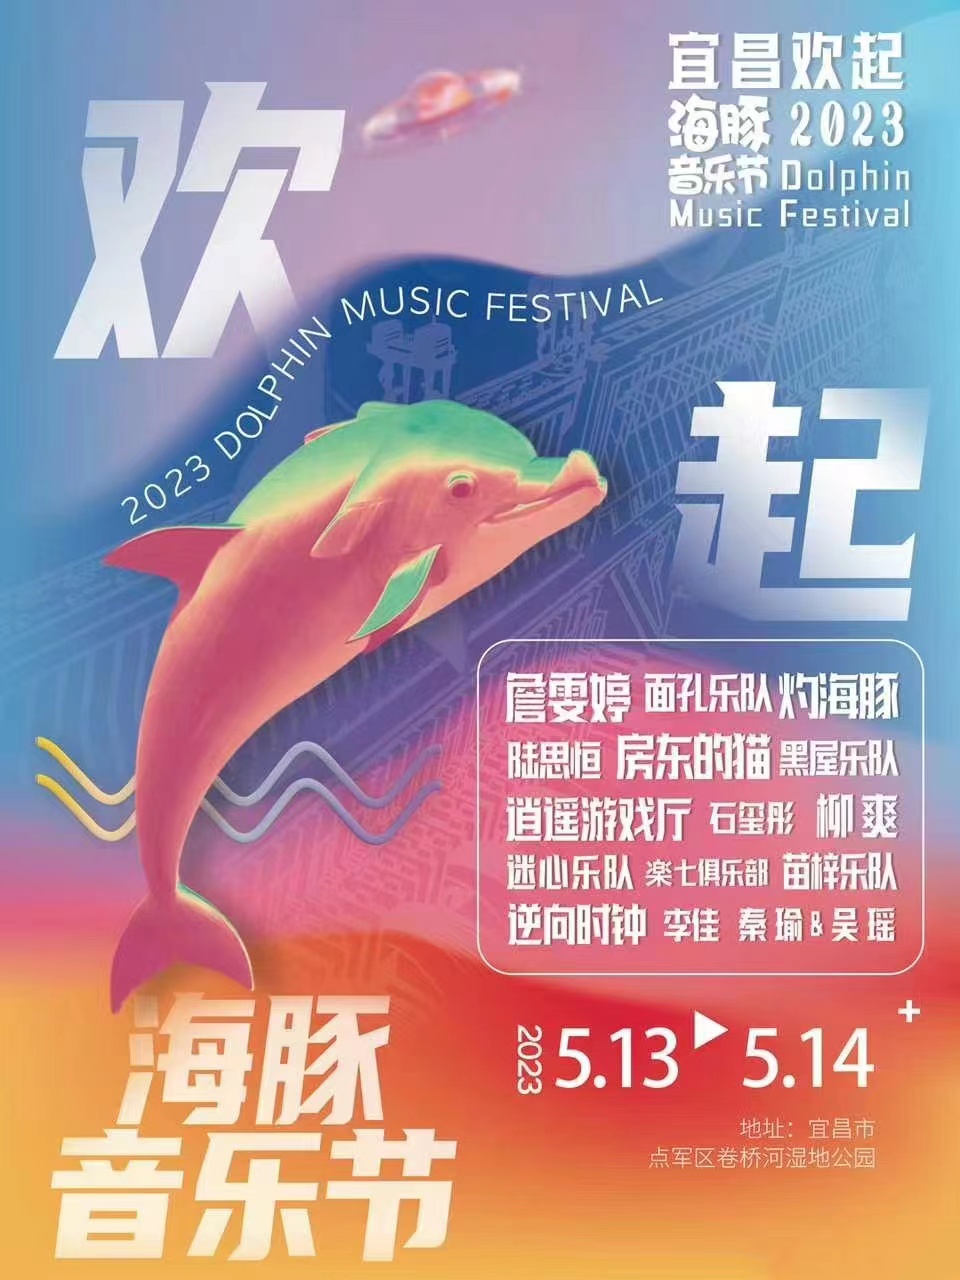 宜昌欢起海豚音乐节